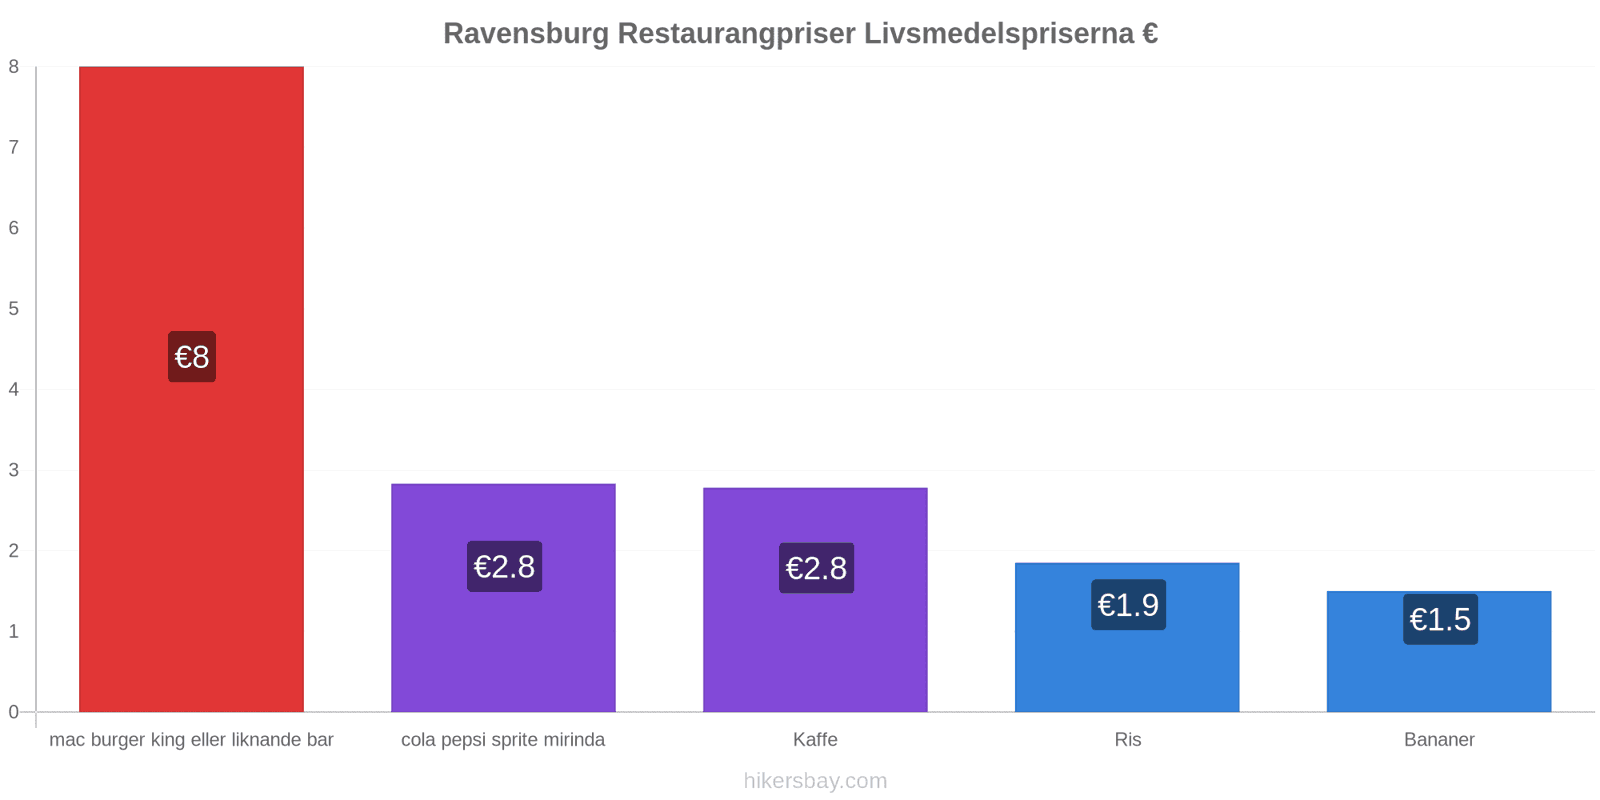 Ravensburg prisändringar hikersbay.com